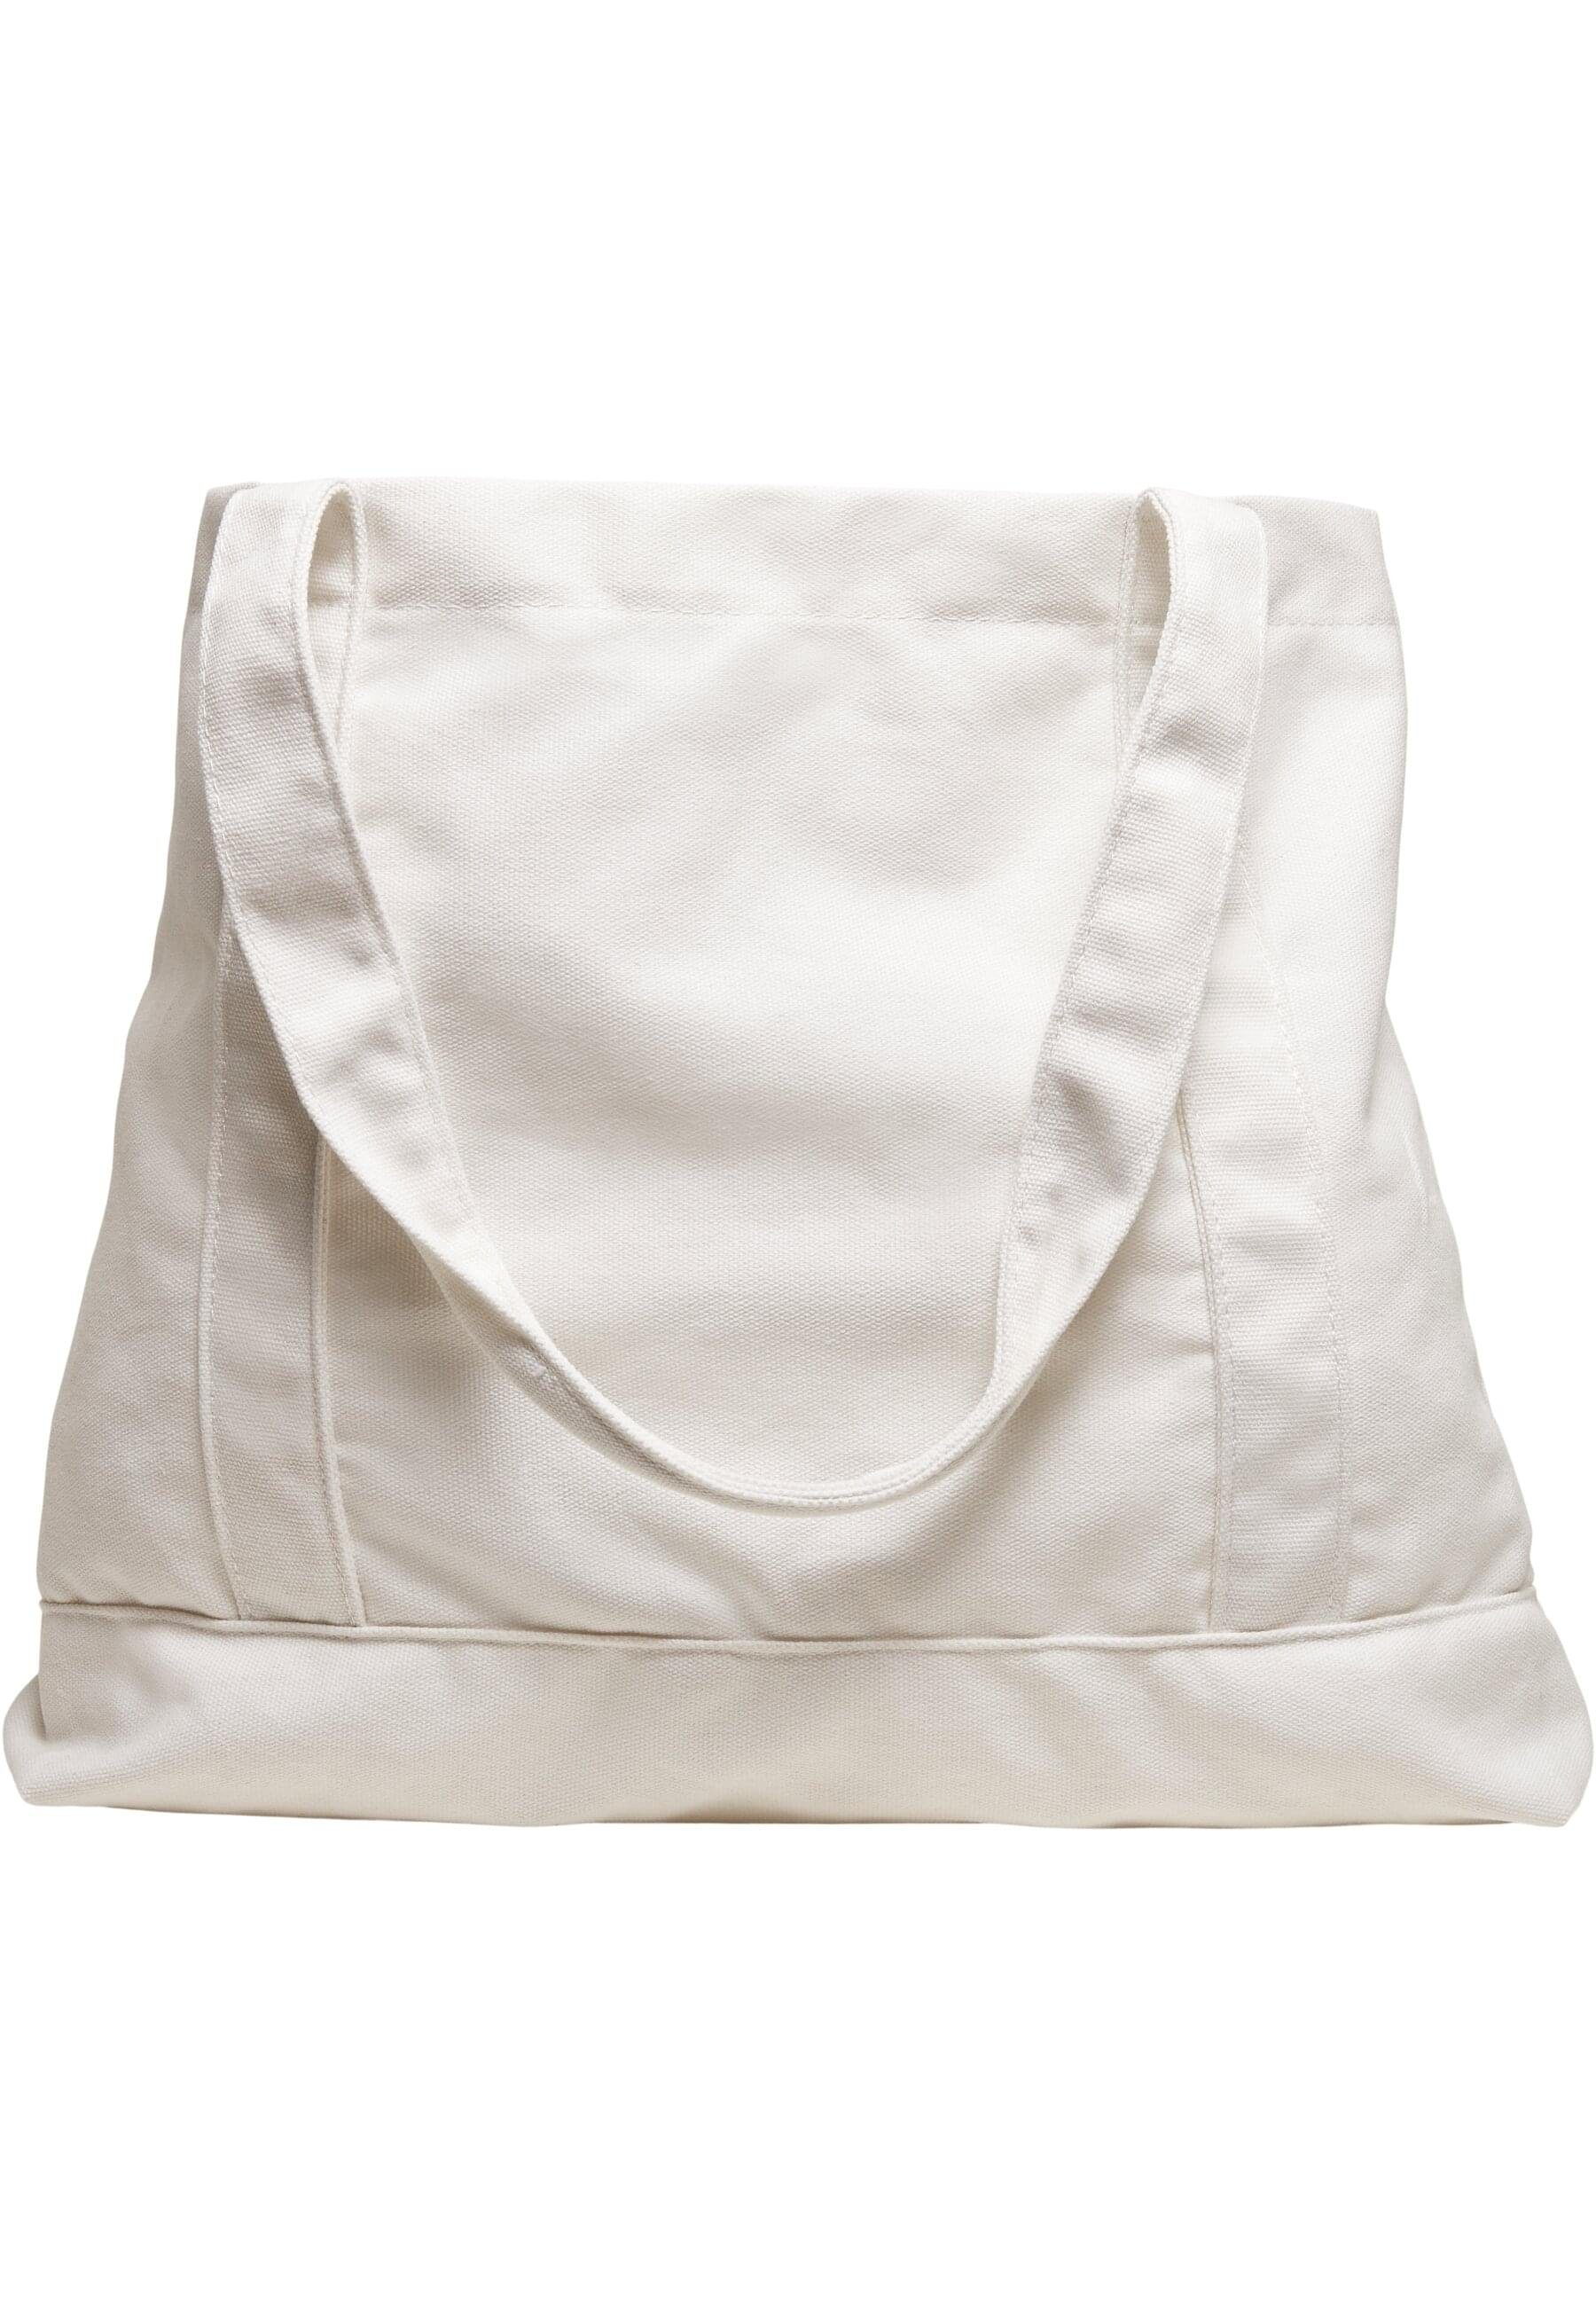 (1-tlg) Tote Handtasche CLASSICS URBAN Canvas Bag Logo Unisex